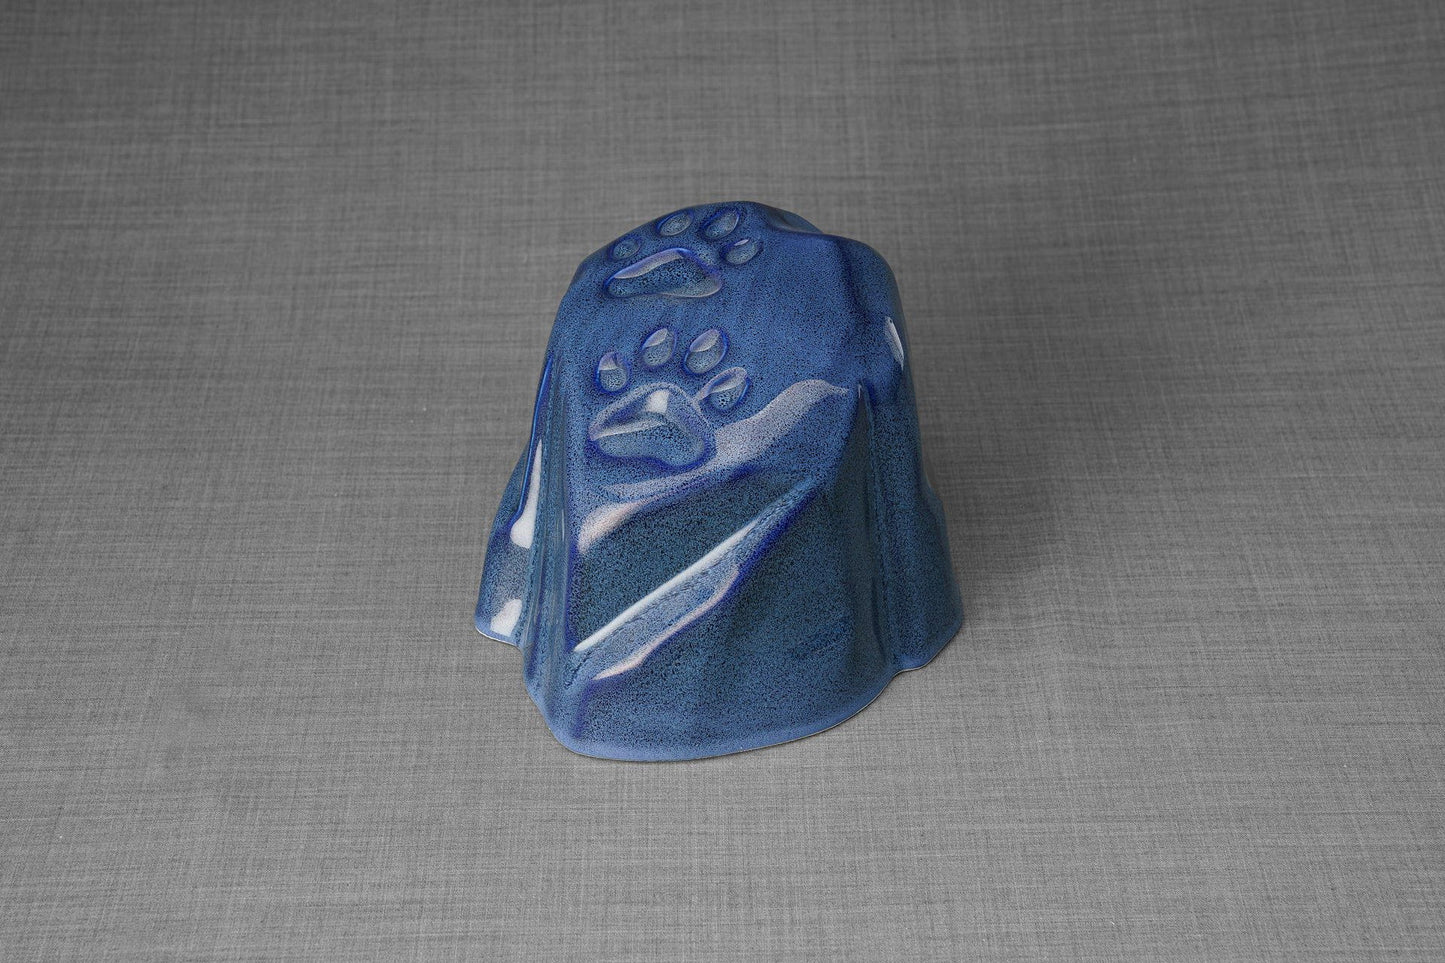 
                  
                    Pulvis Art Urns Pet Urn Paw Print Urn For Pet Ashes - Blue Melange | Ceramic
                  
                